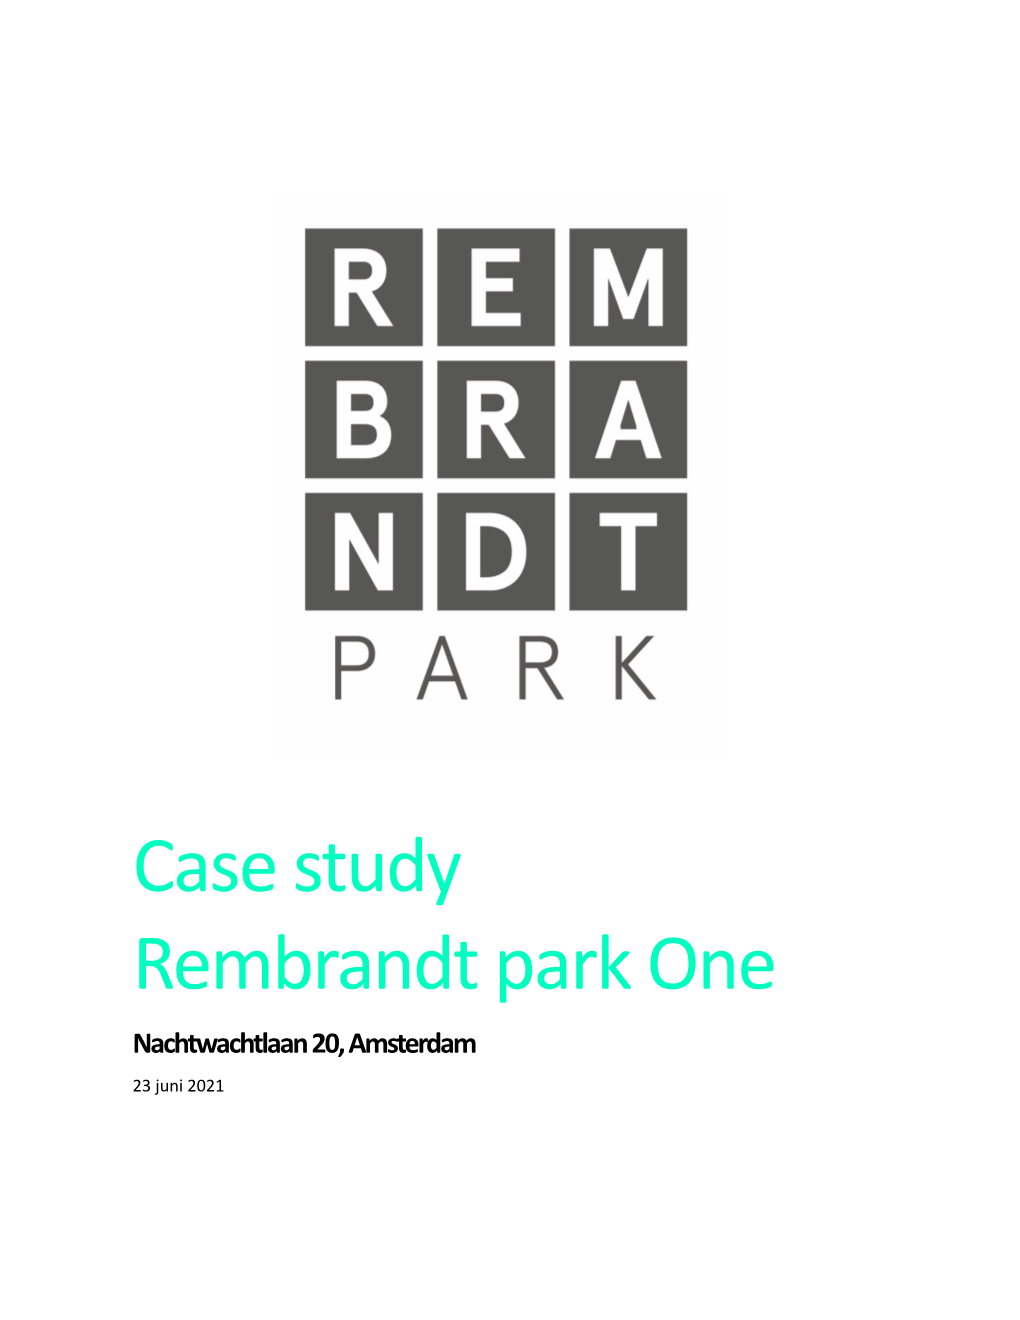 Case Study Rembrandt Park